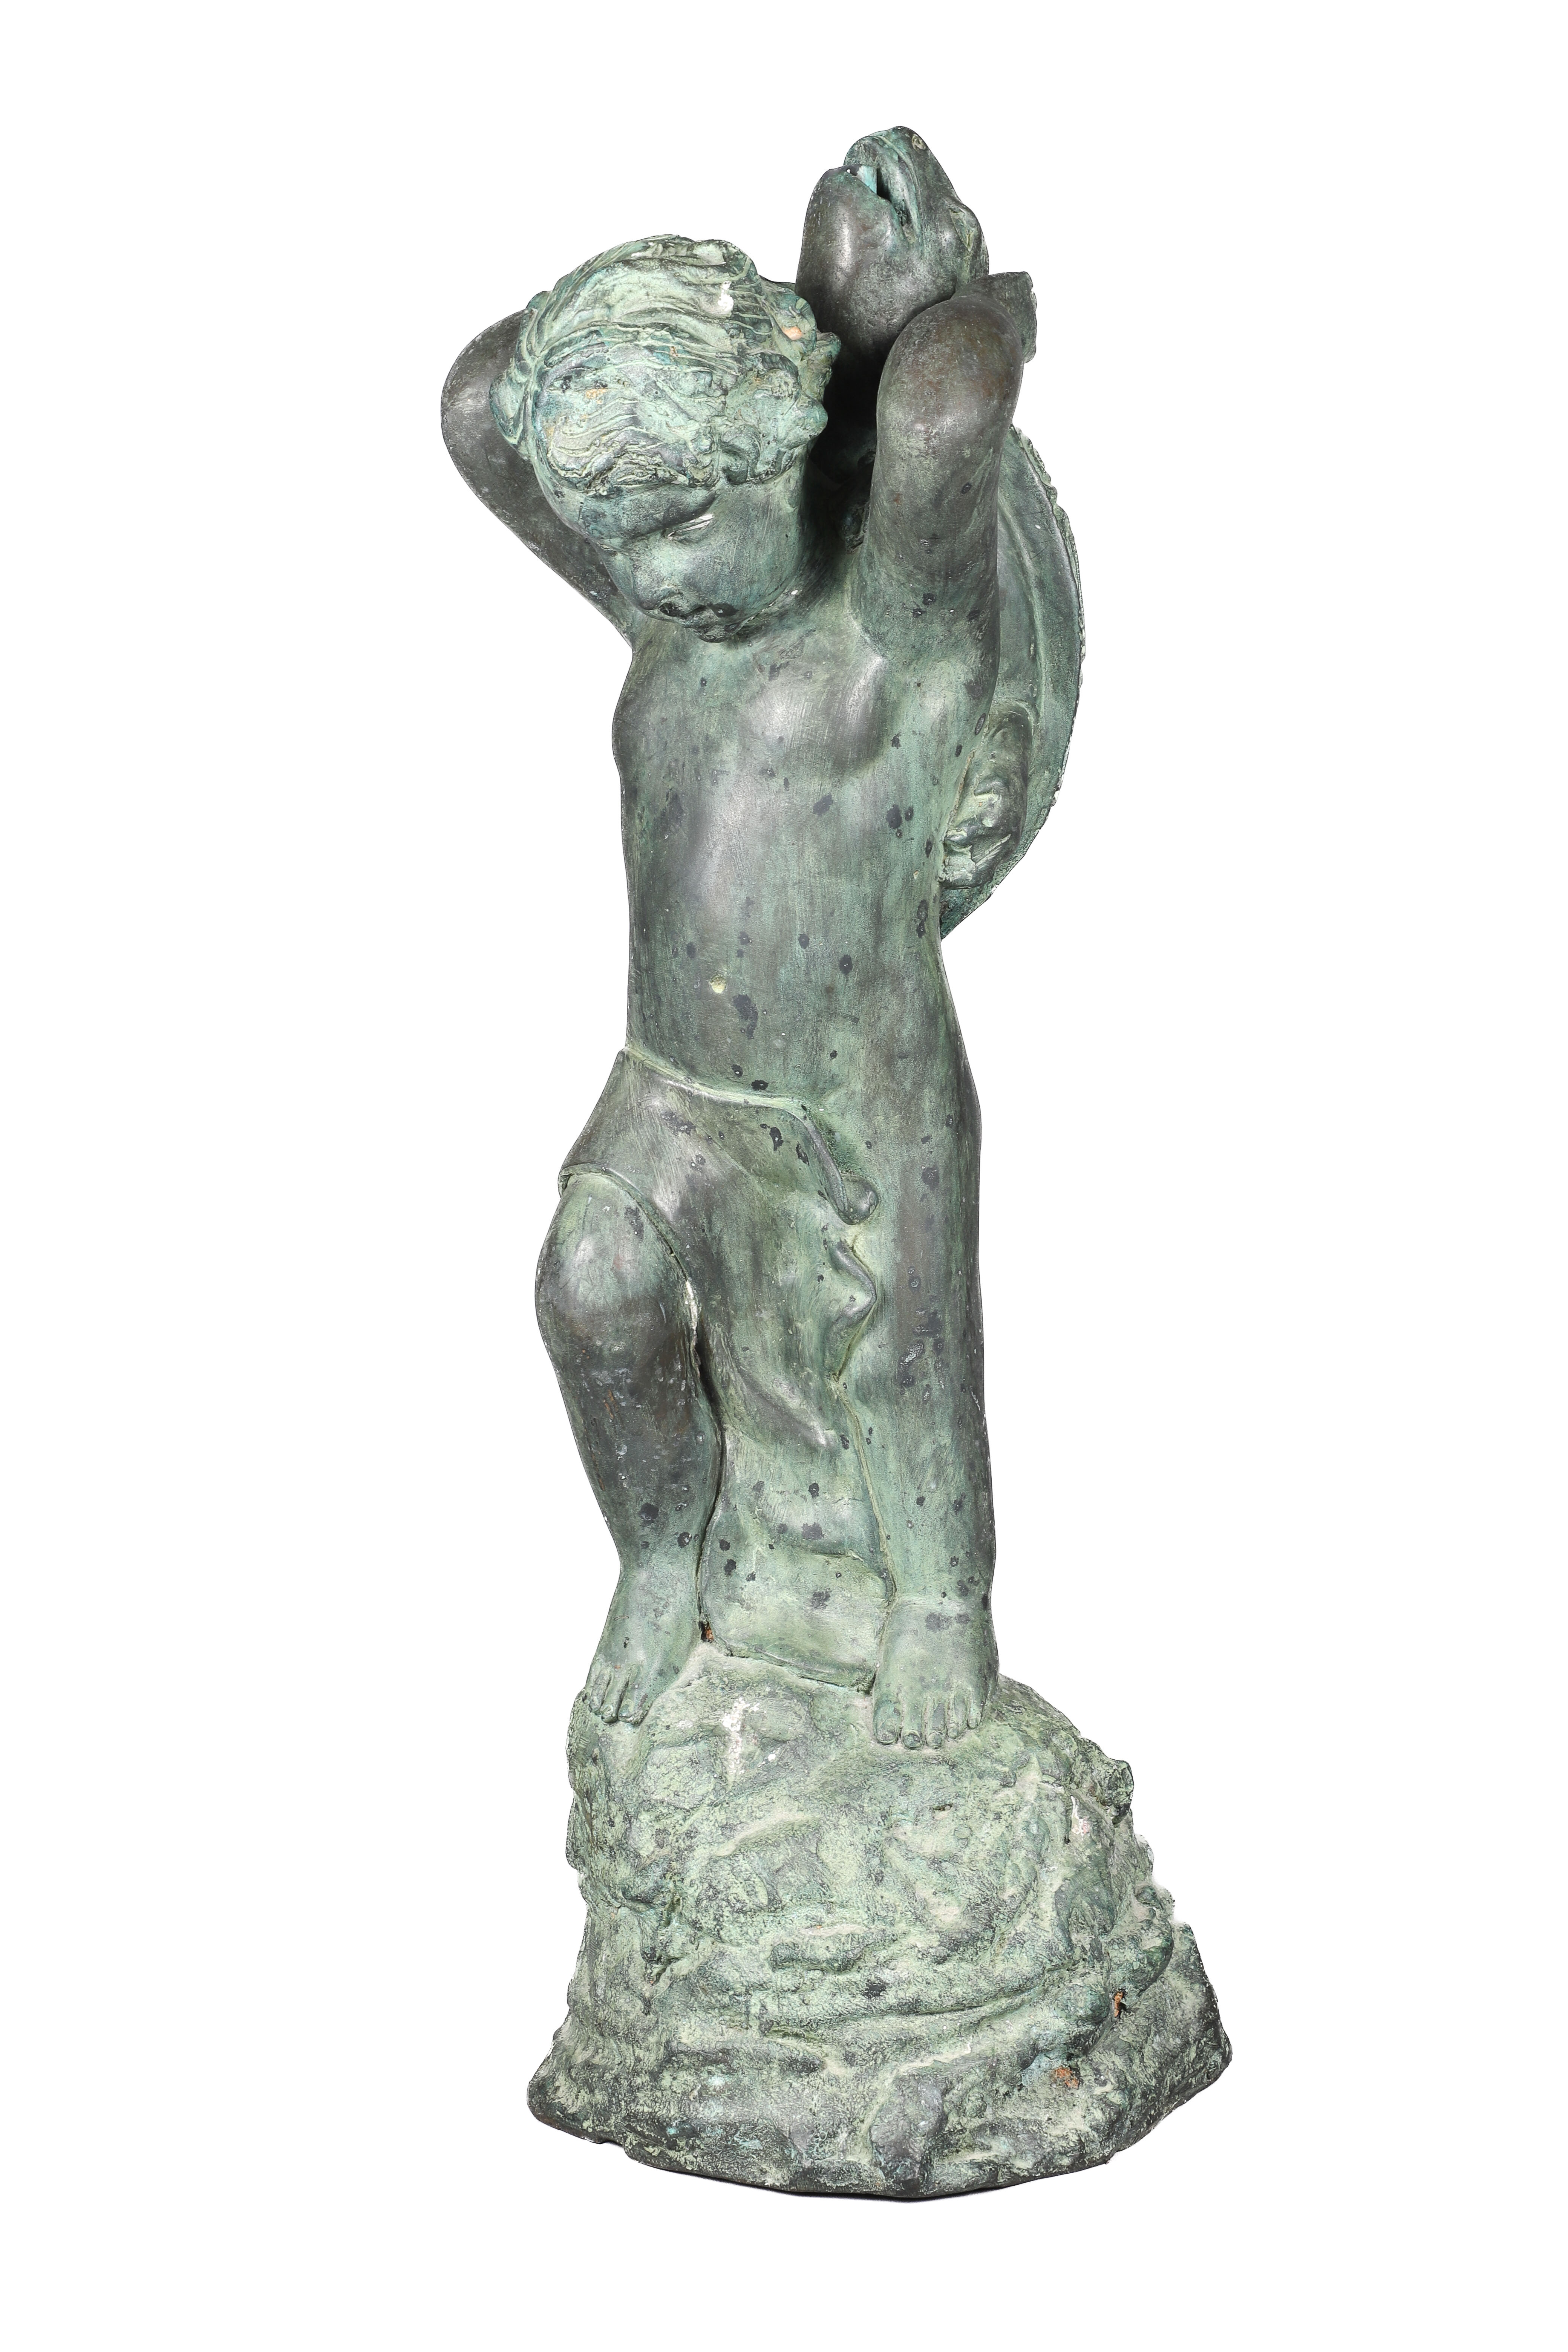 Patinated Bronze figural fountain 2e1c68